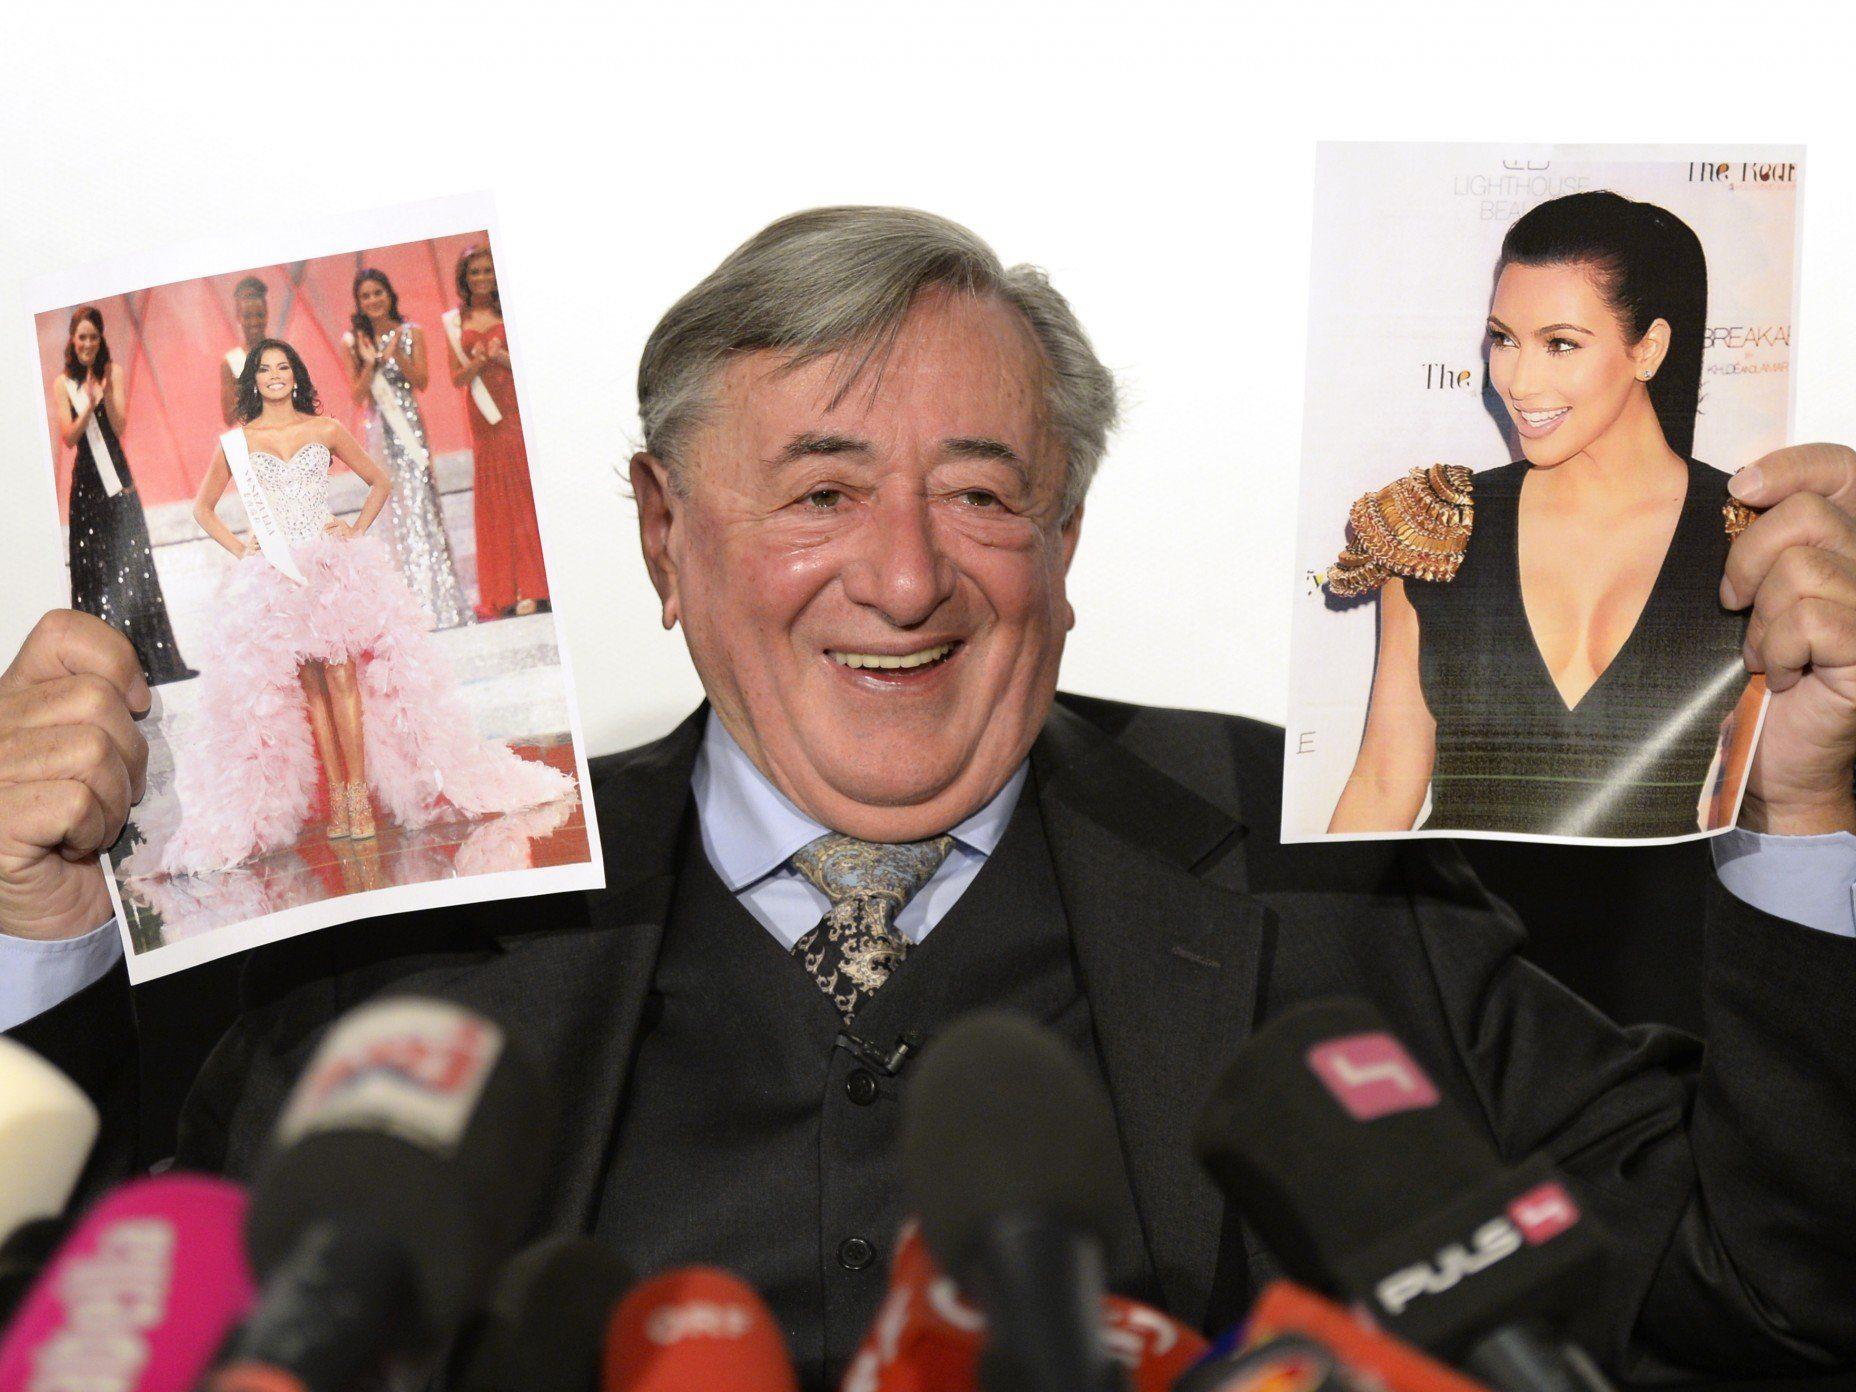 Richard Lugner freut sich auf Kim Kardashian, die ihn auf den Opernball 2014 begleiten wird.